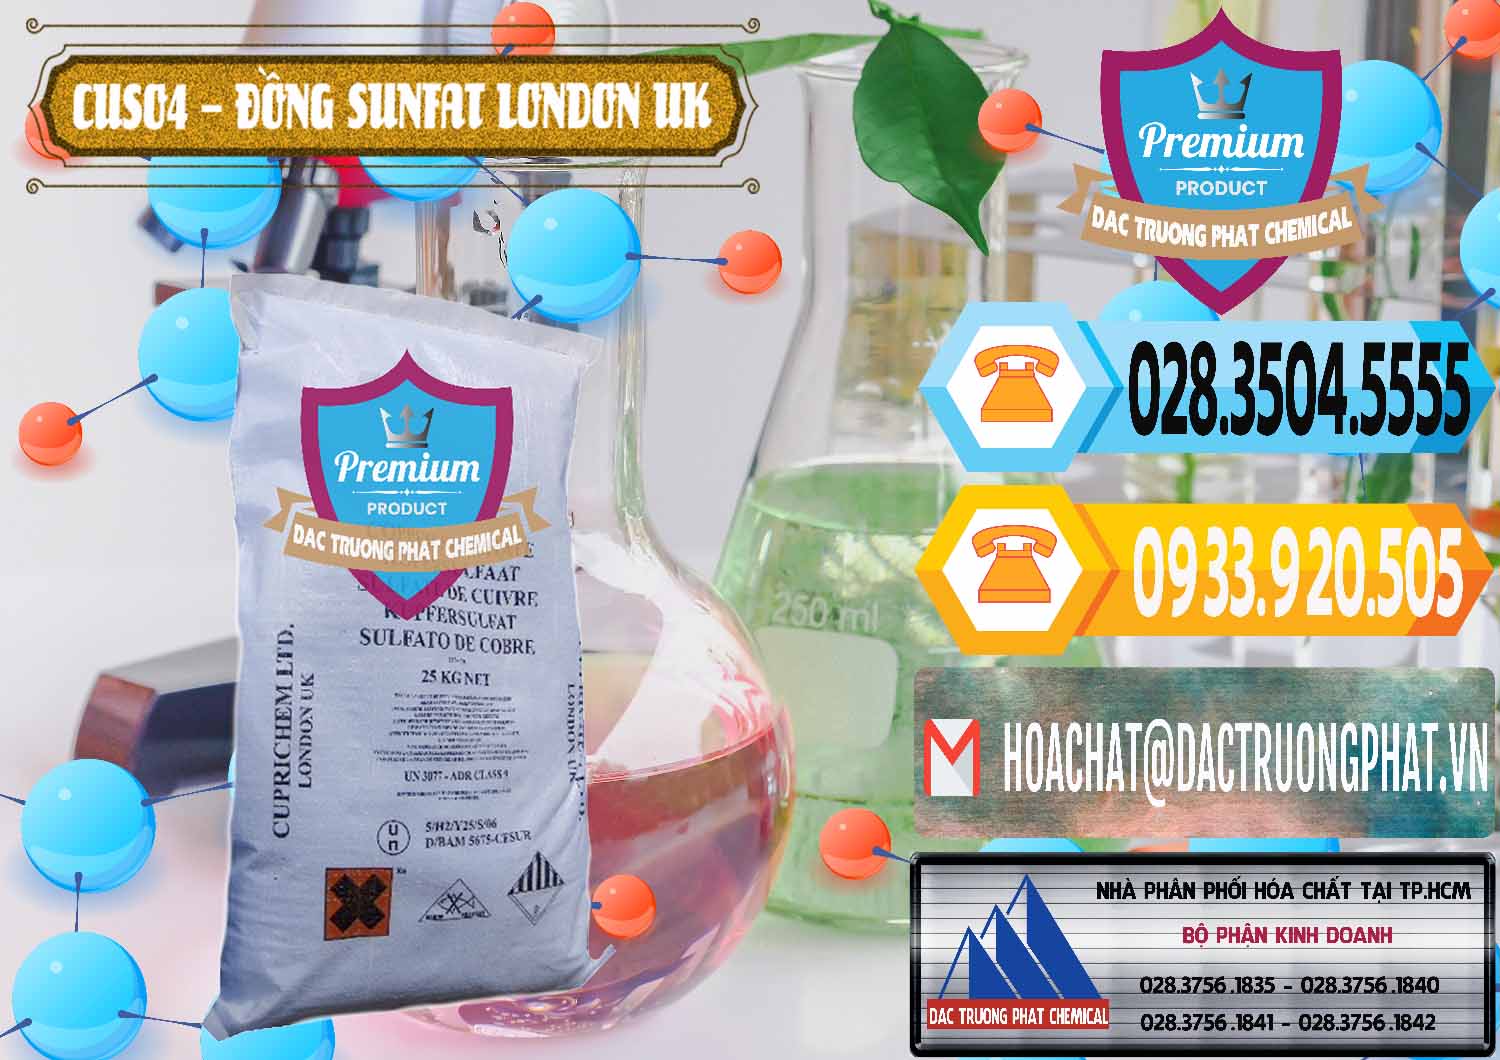 Cty chuyên cung ứng & bán CuSO4 – Đồng Sunfat Anh Uk Kingdoms - 0478 - Cty bán _ cung cấp hóa chất tại TP.HCM - hoachattayrua.net